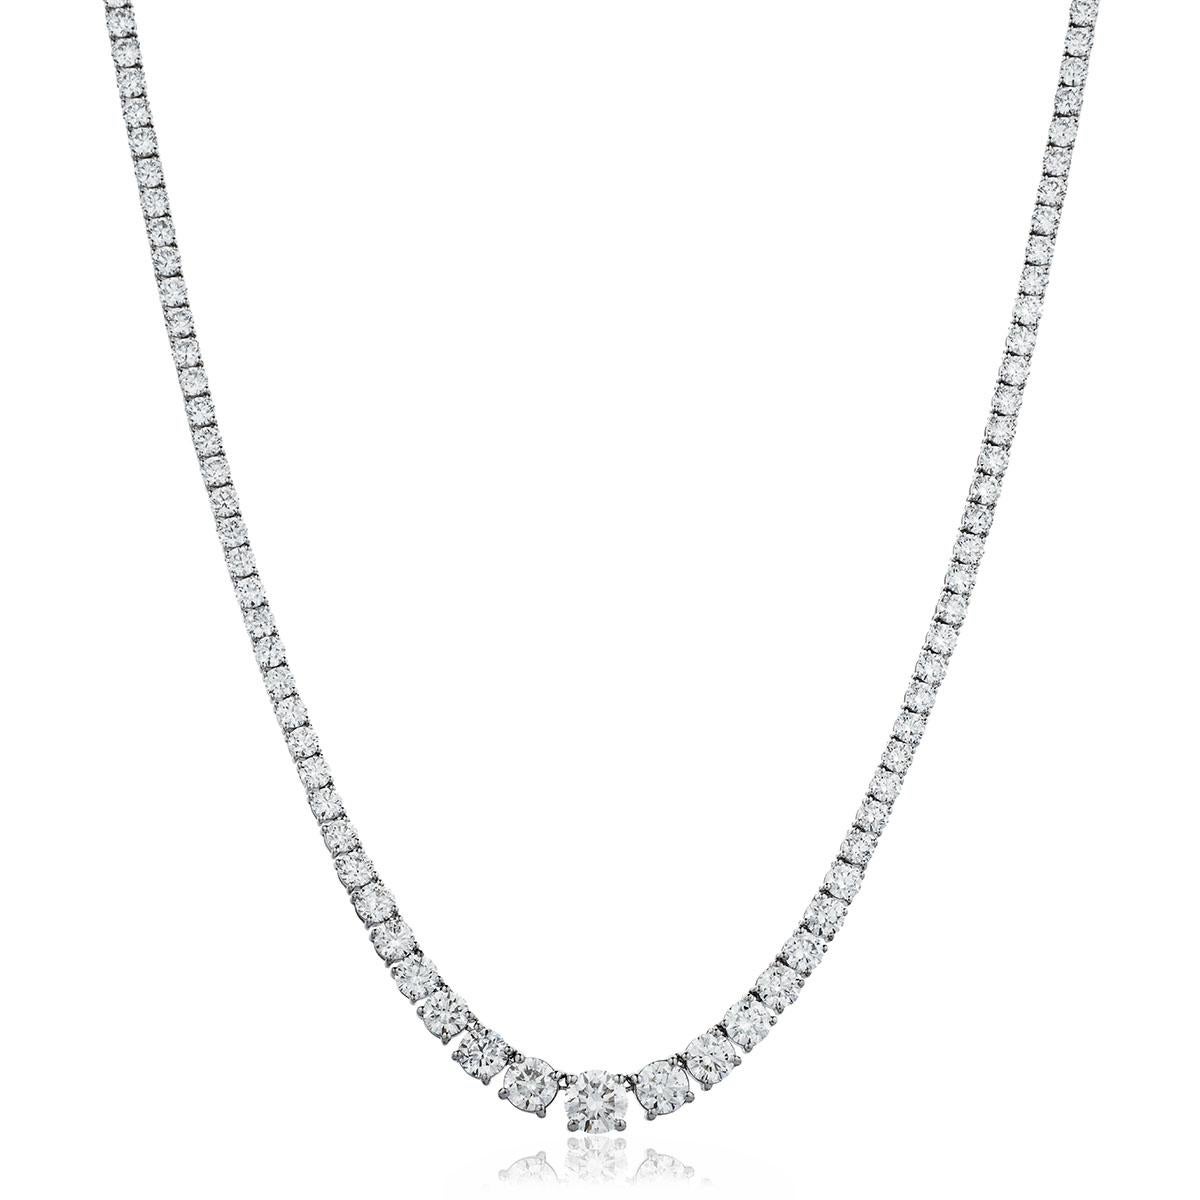 Dieses atemberaubende Riviera-Halsband hat ein Gesamtgewicht von 24,52 Karat in perfekt abgestuften Edelsteinen im runden Brillantschliff mit der strahlend weißen Farbe G und der augenreinen Reinheit SI1, von denen der größte Diamant 0,77 Karat hat.